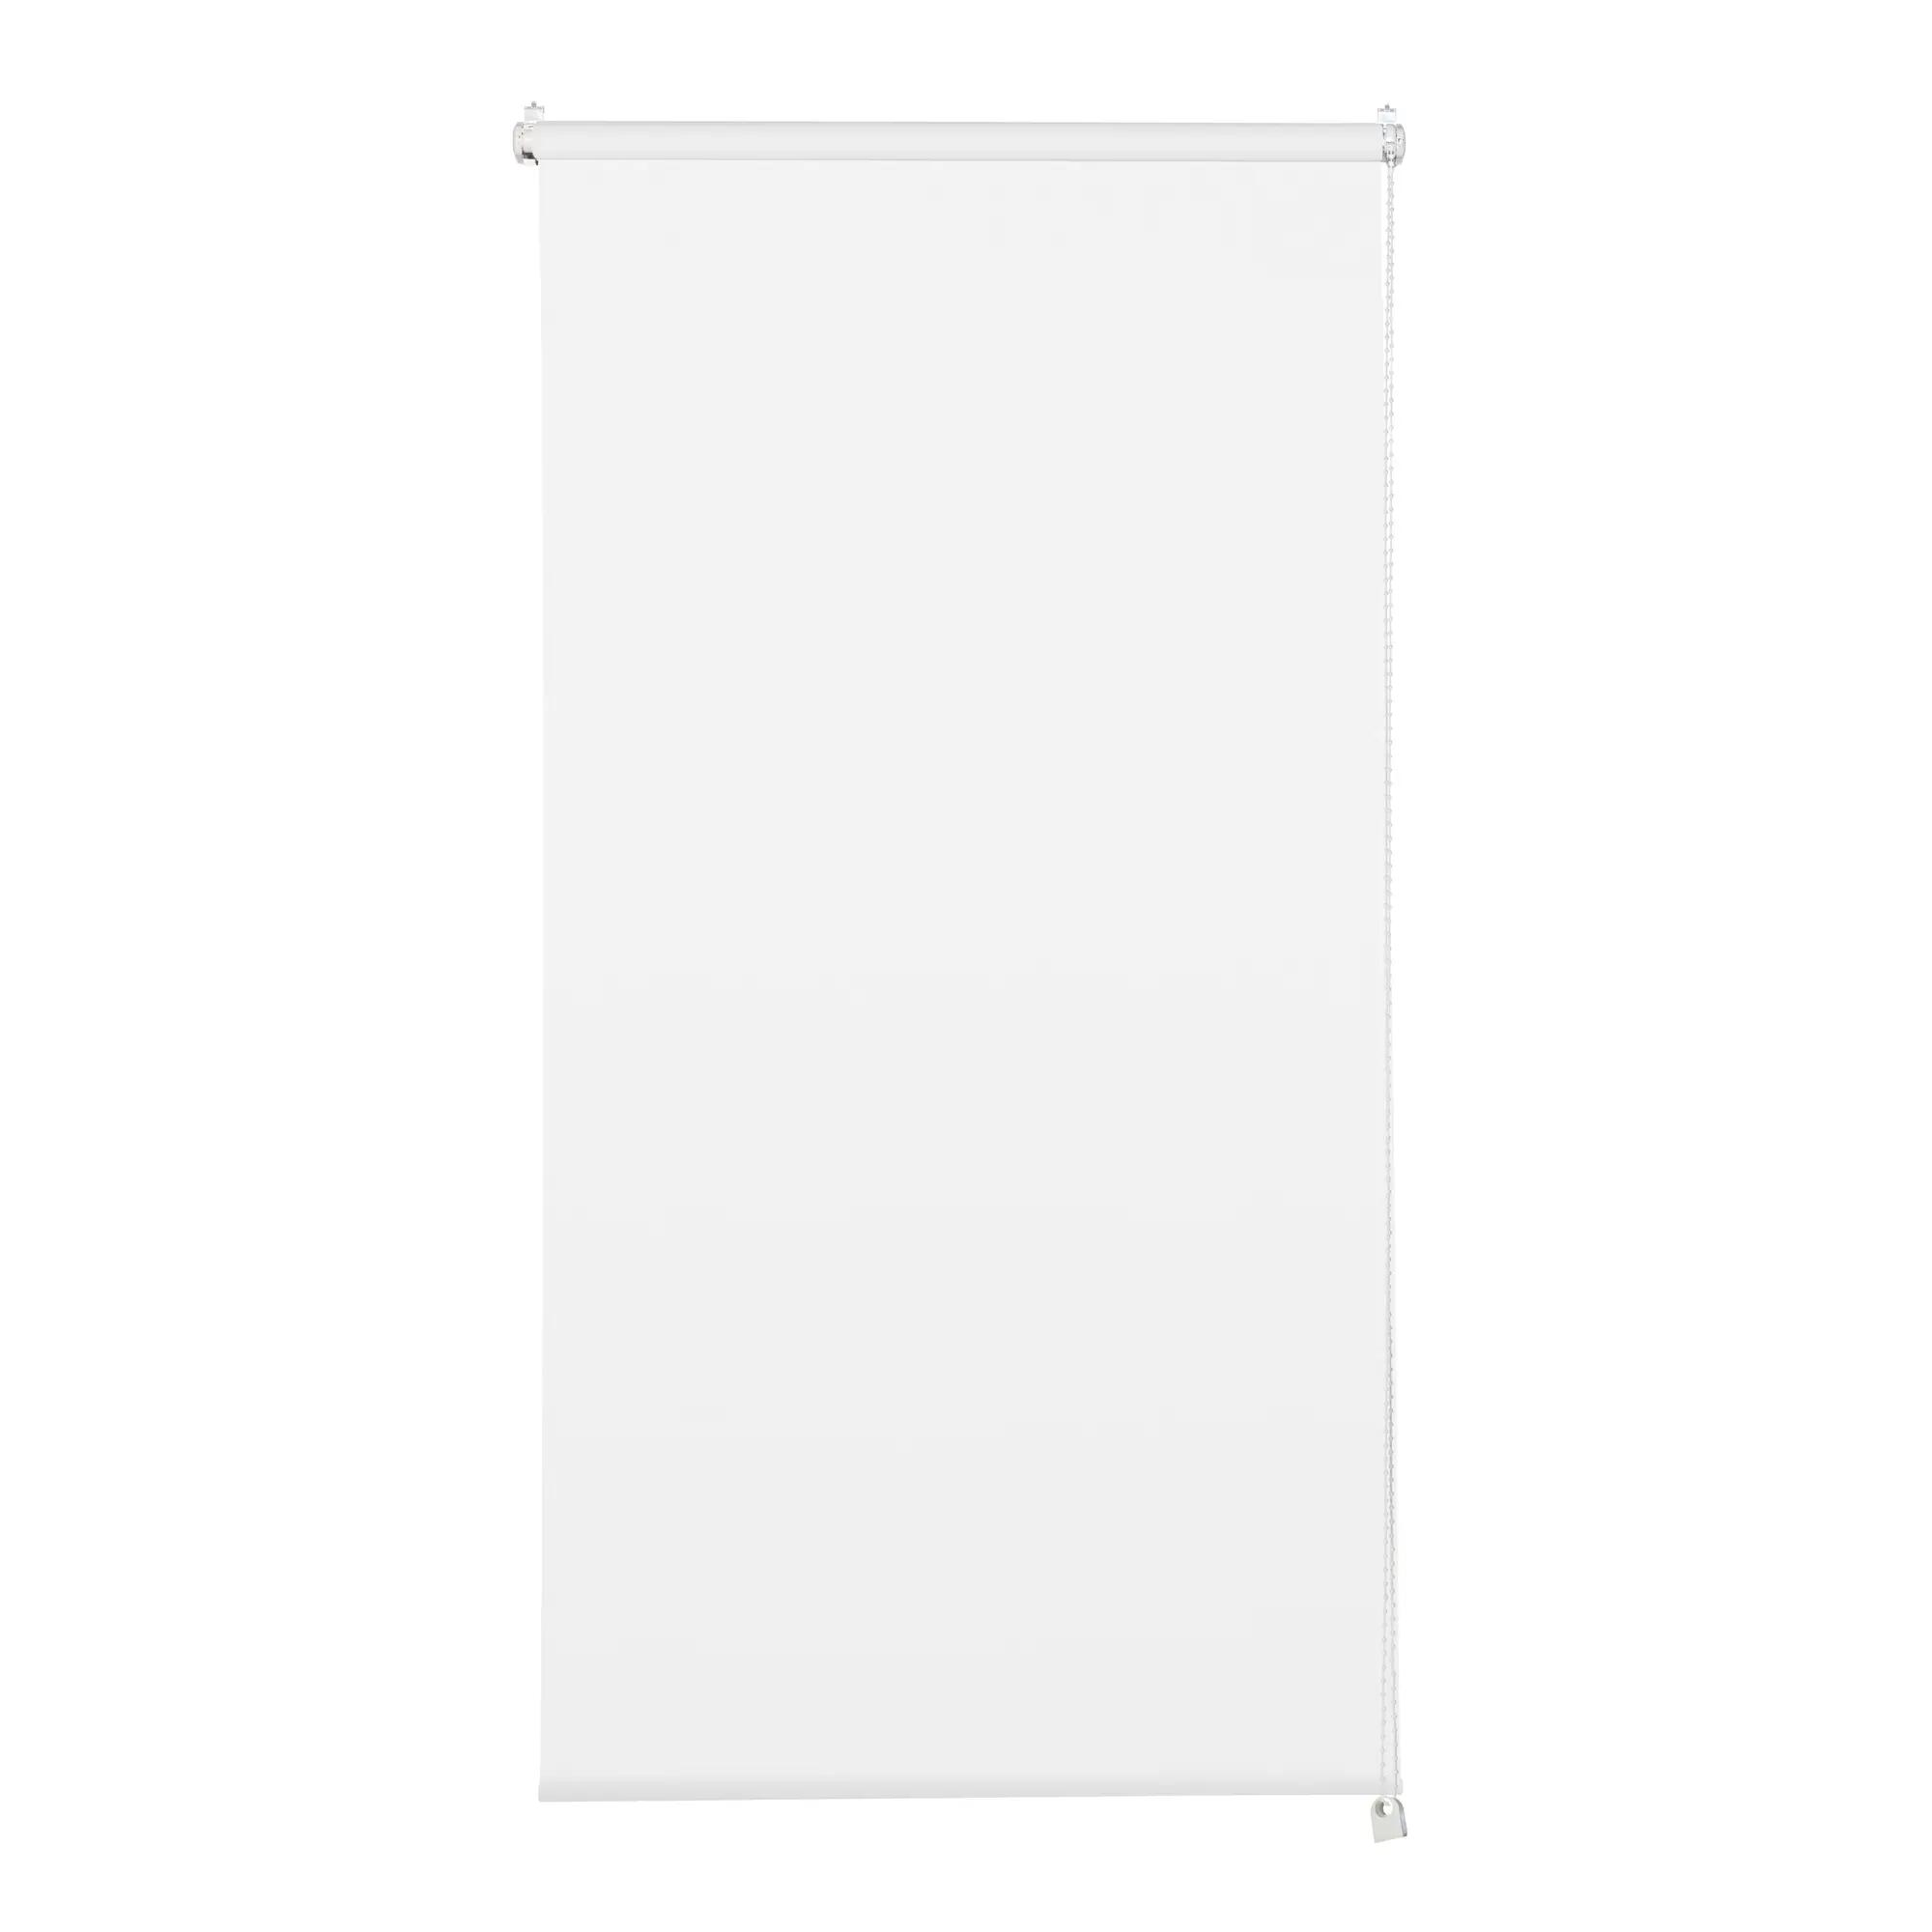 Tenda a rullo filtrante INSPIRE Screen bianca 135 x 250 cm - 3